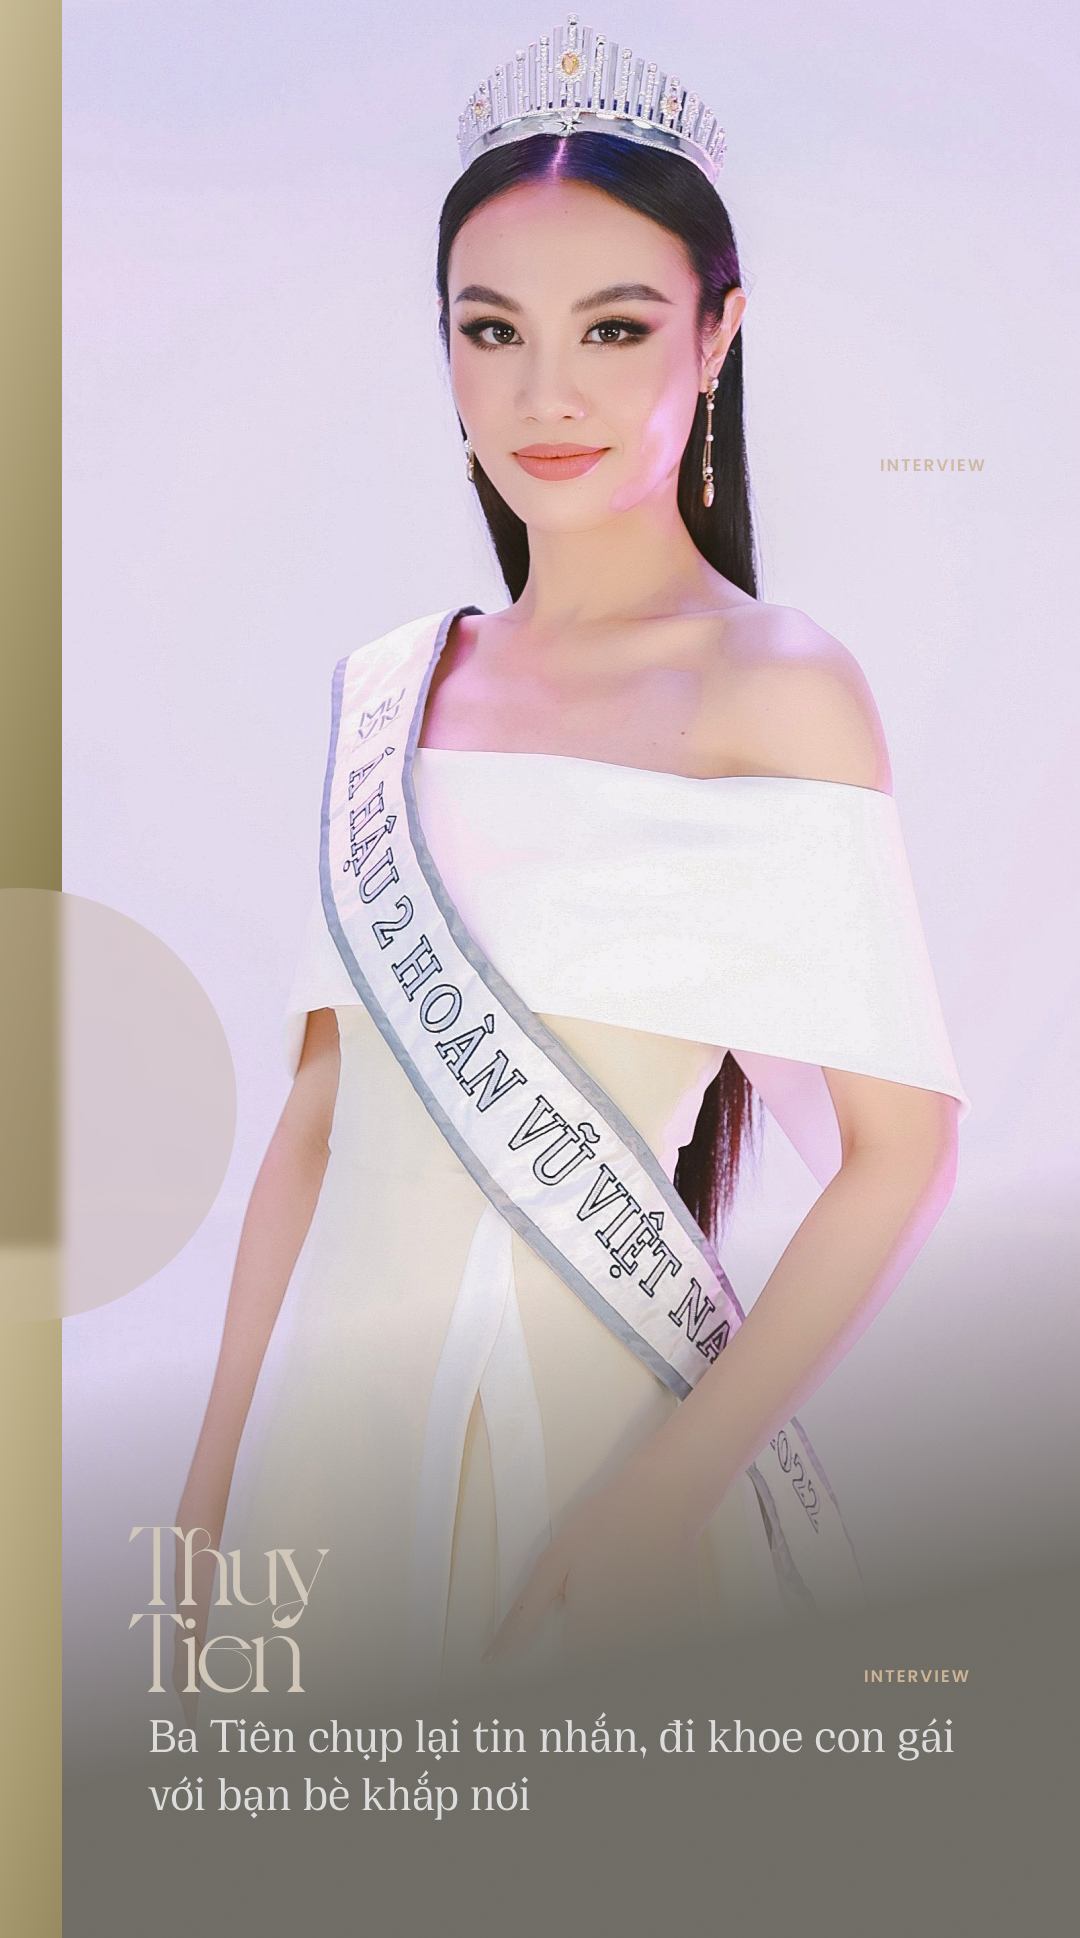 Top 3 Hoa hậu Hoàn vũ Việt Nam 2022: Không bất ngờ về tính xấu của nhau, lần đầu kể chuyện về người yêu cũ - Ảnh 3.